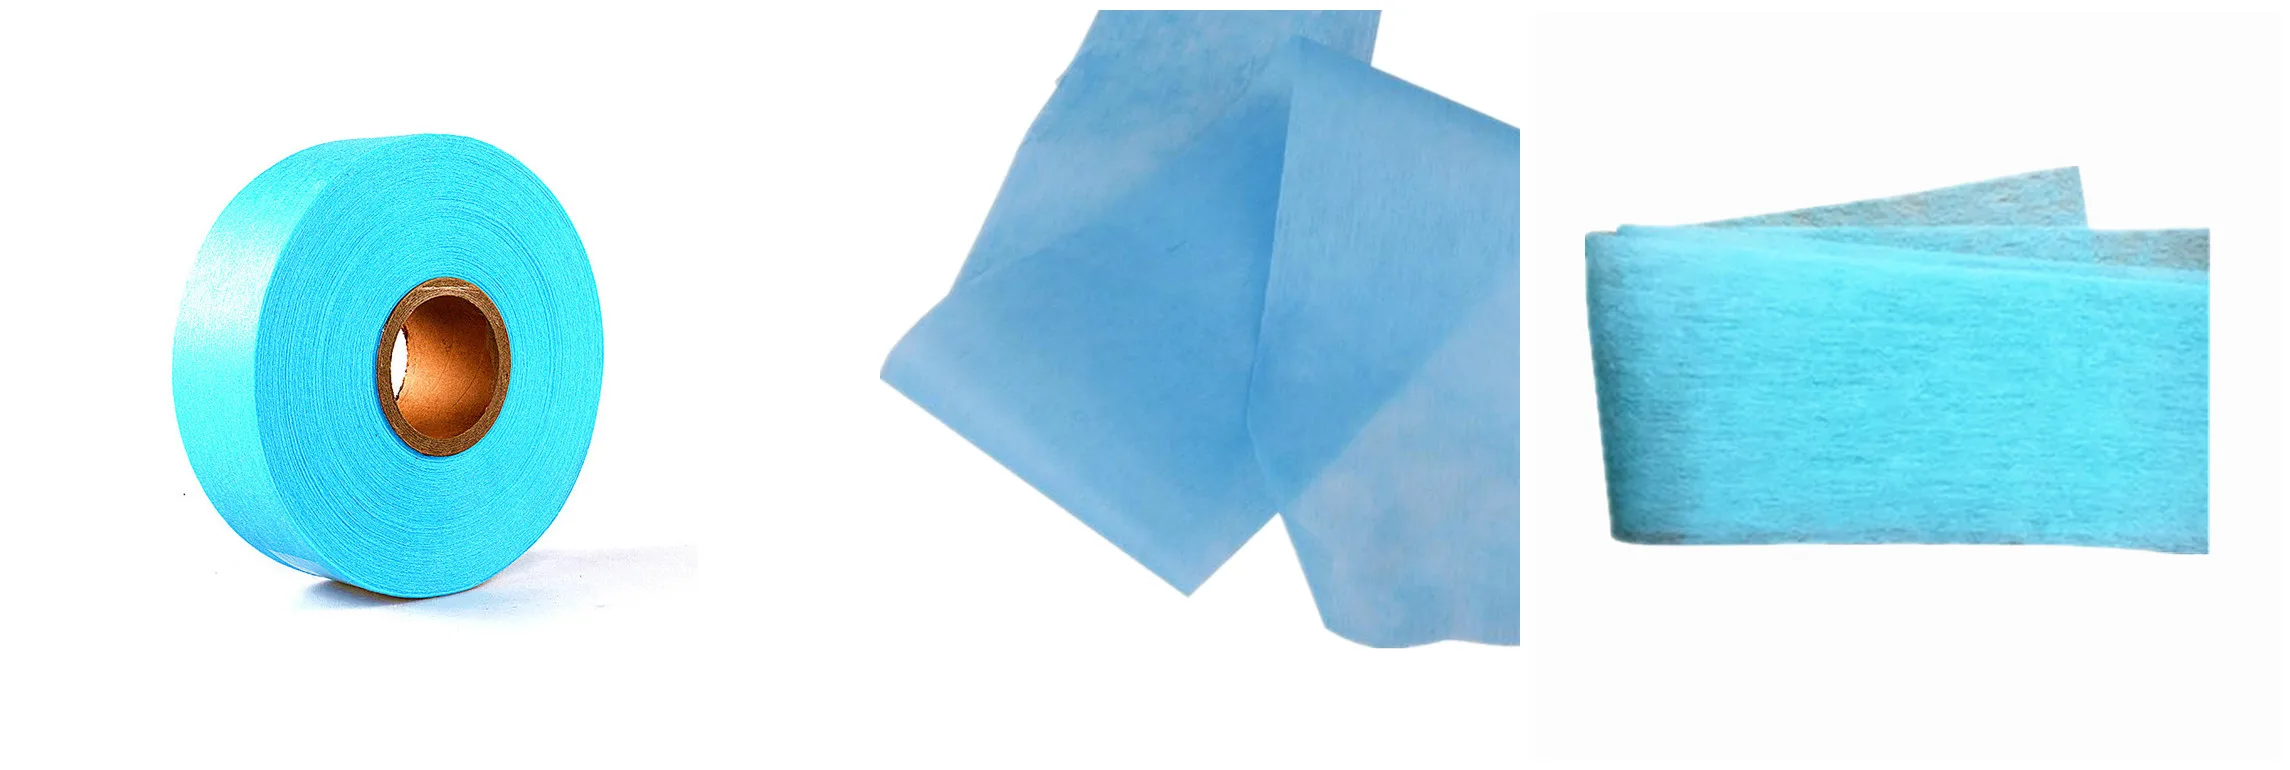 Одноразовые подгузники Great Absorbent Blue ADL с нетканым материалом